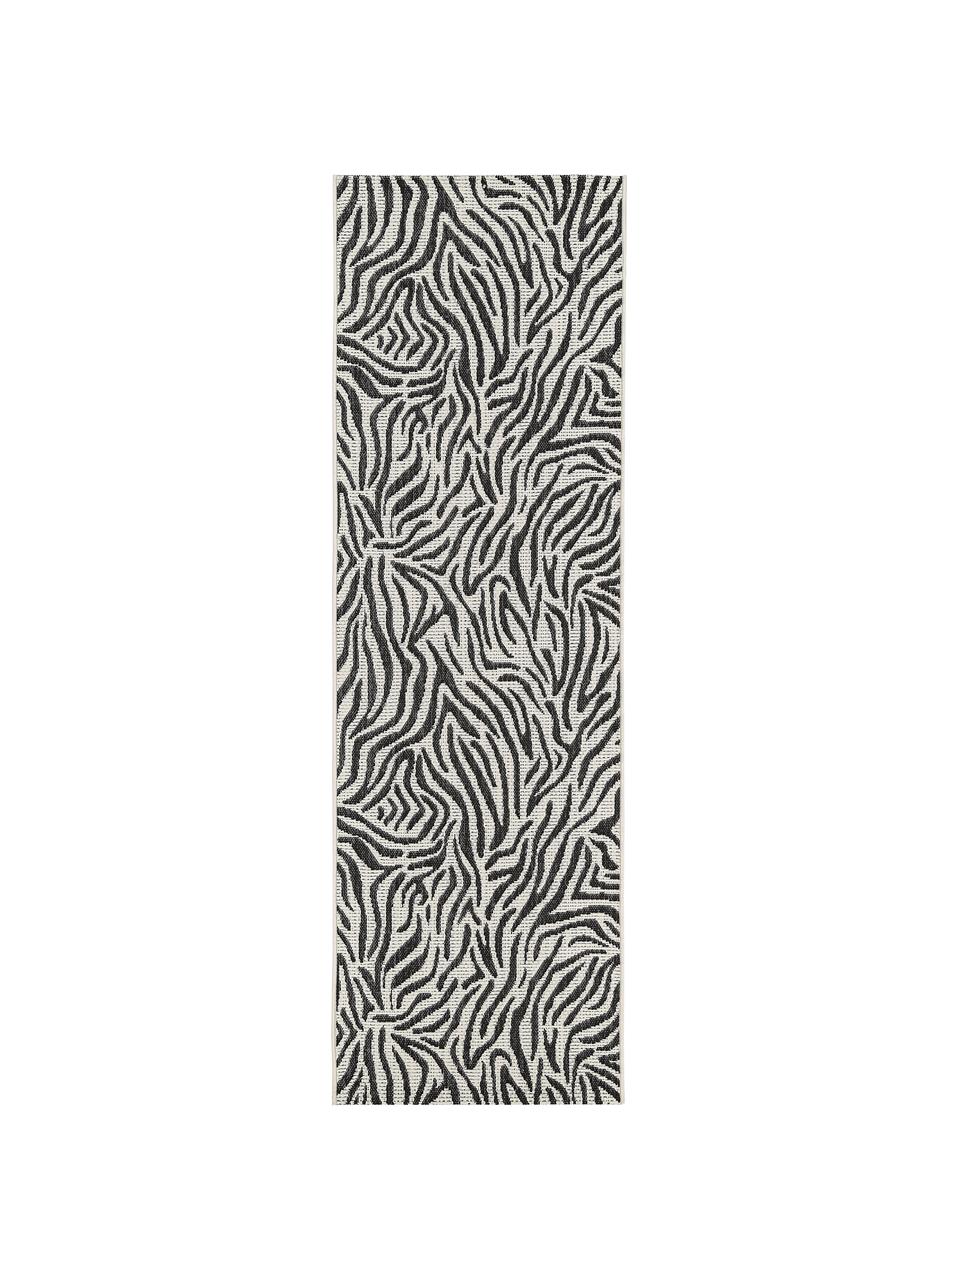 In- & Outdoor-Läufer Exotic mit Zebra Print, Flor: 100% Polypropylen, Cremeweiß, Schwarz, 80 x 250 cm